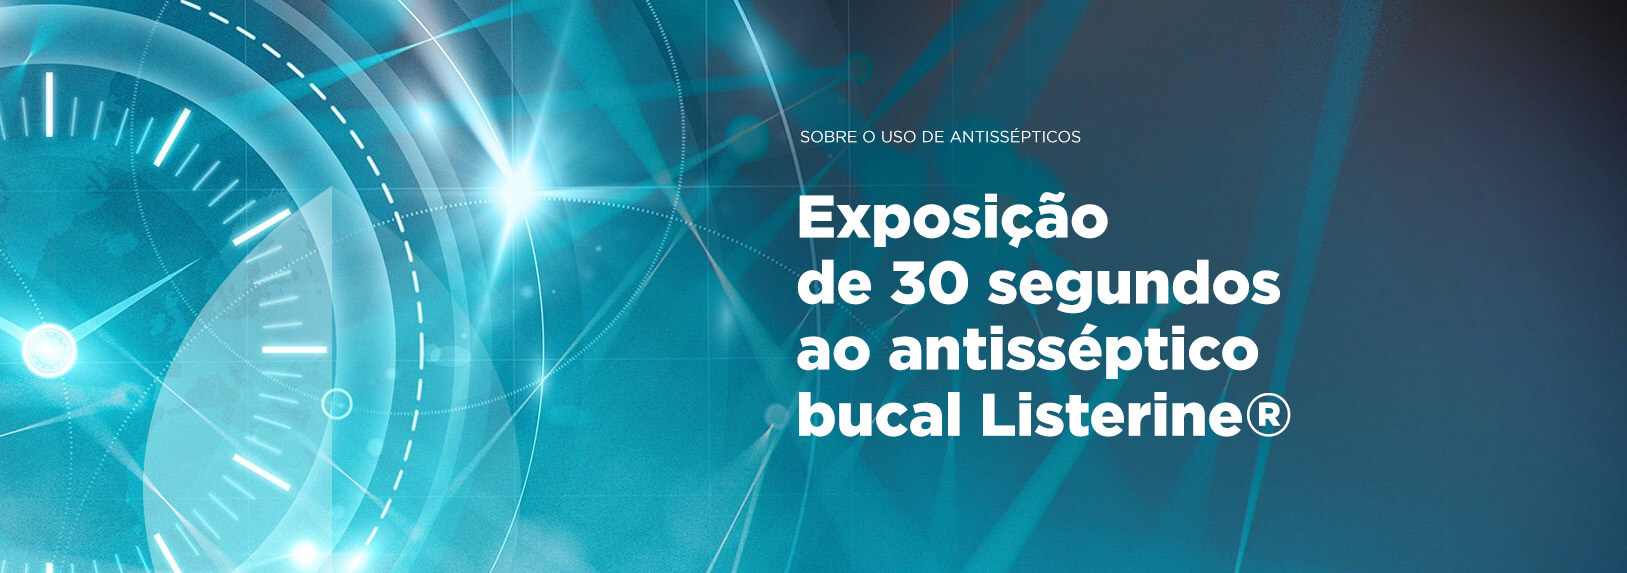 Banner Exposição de 30 segundos ao antisséptico bucal Listerine | Odontologia | J&J